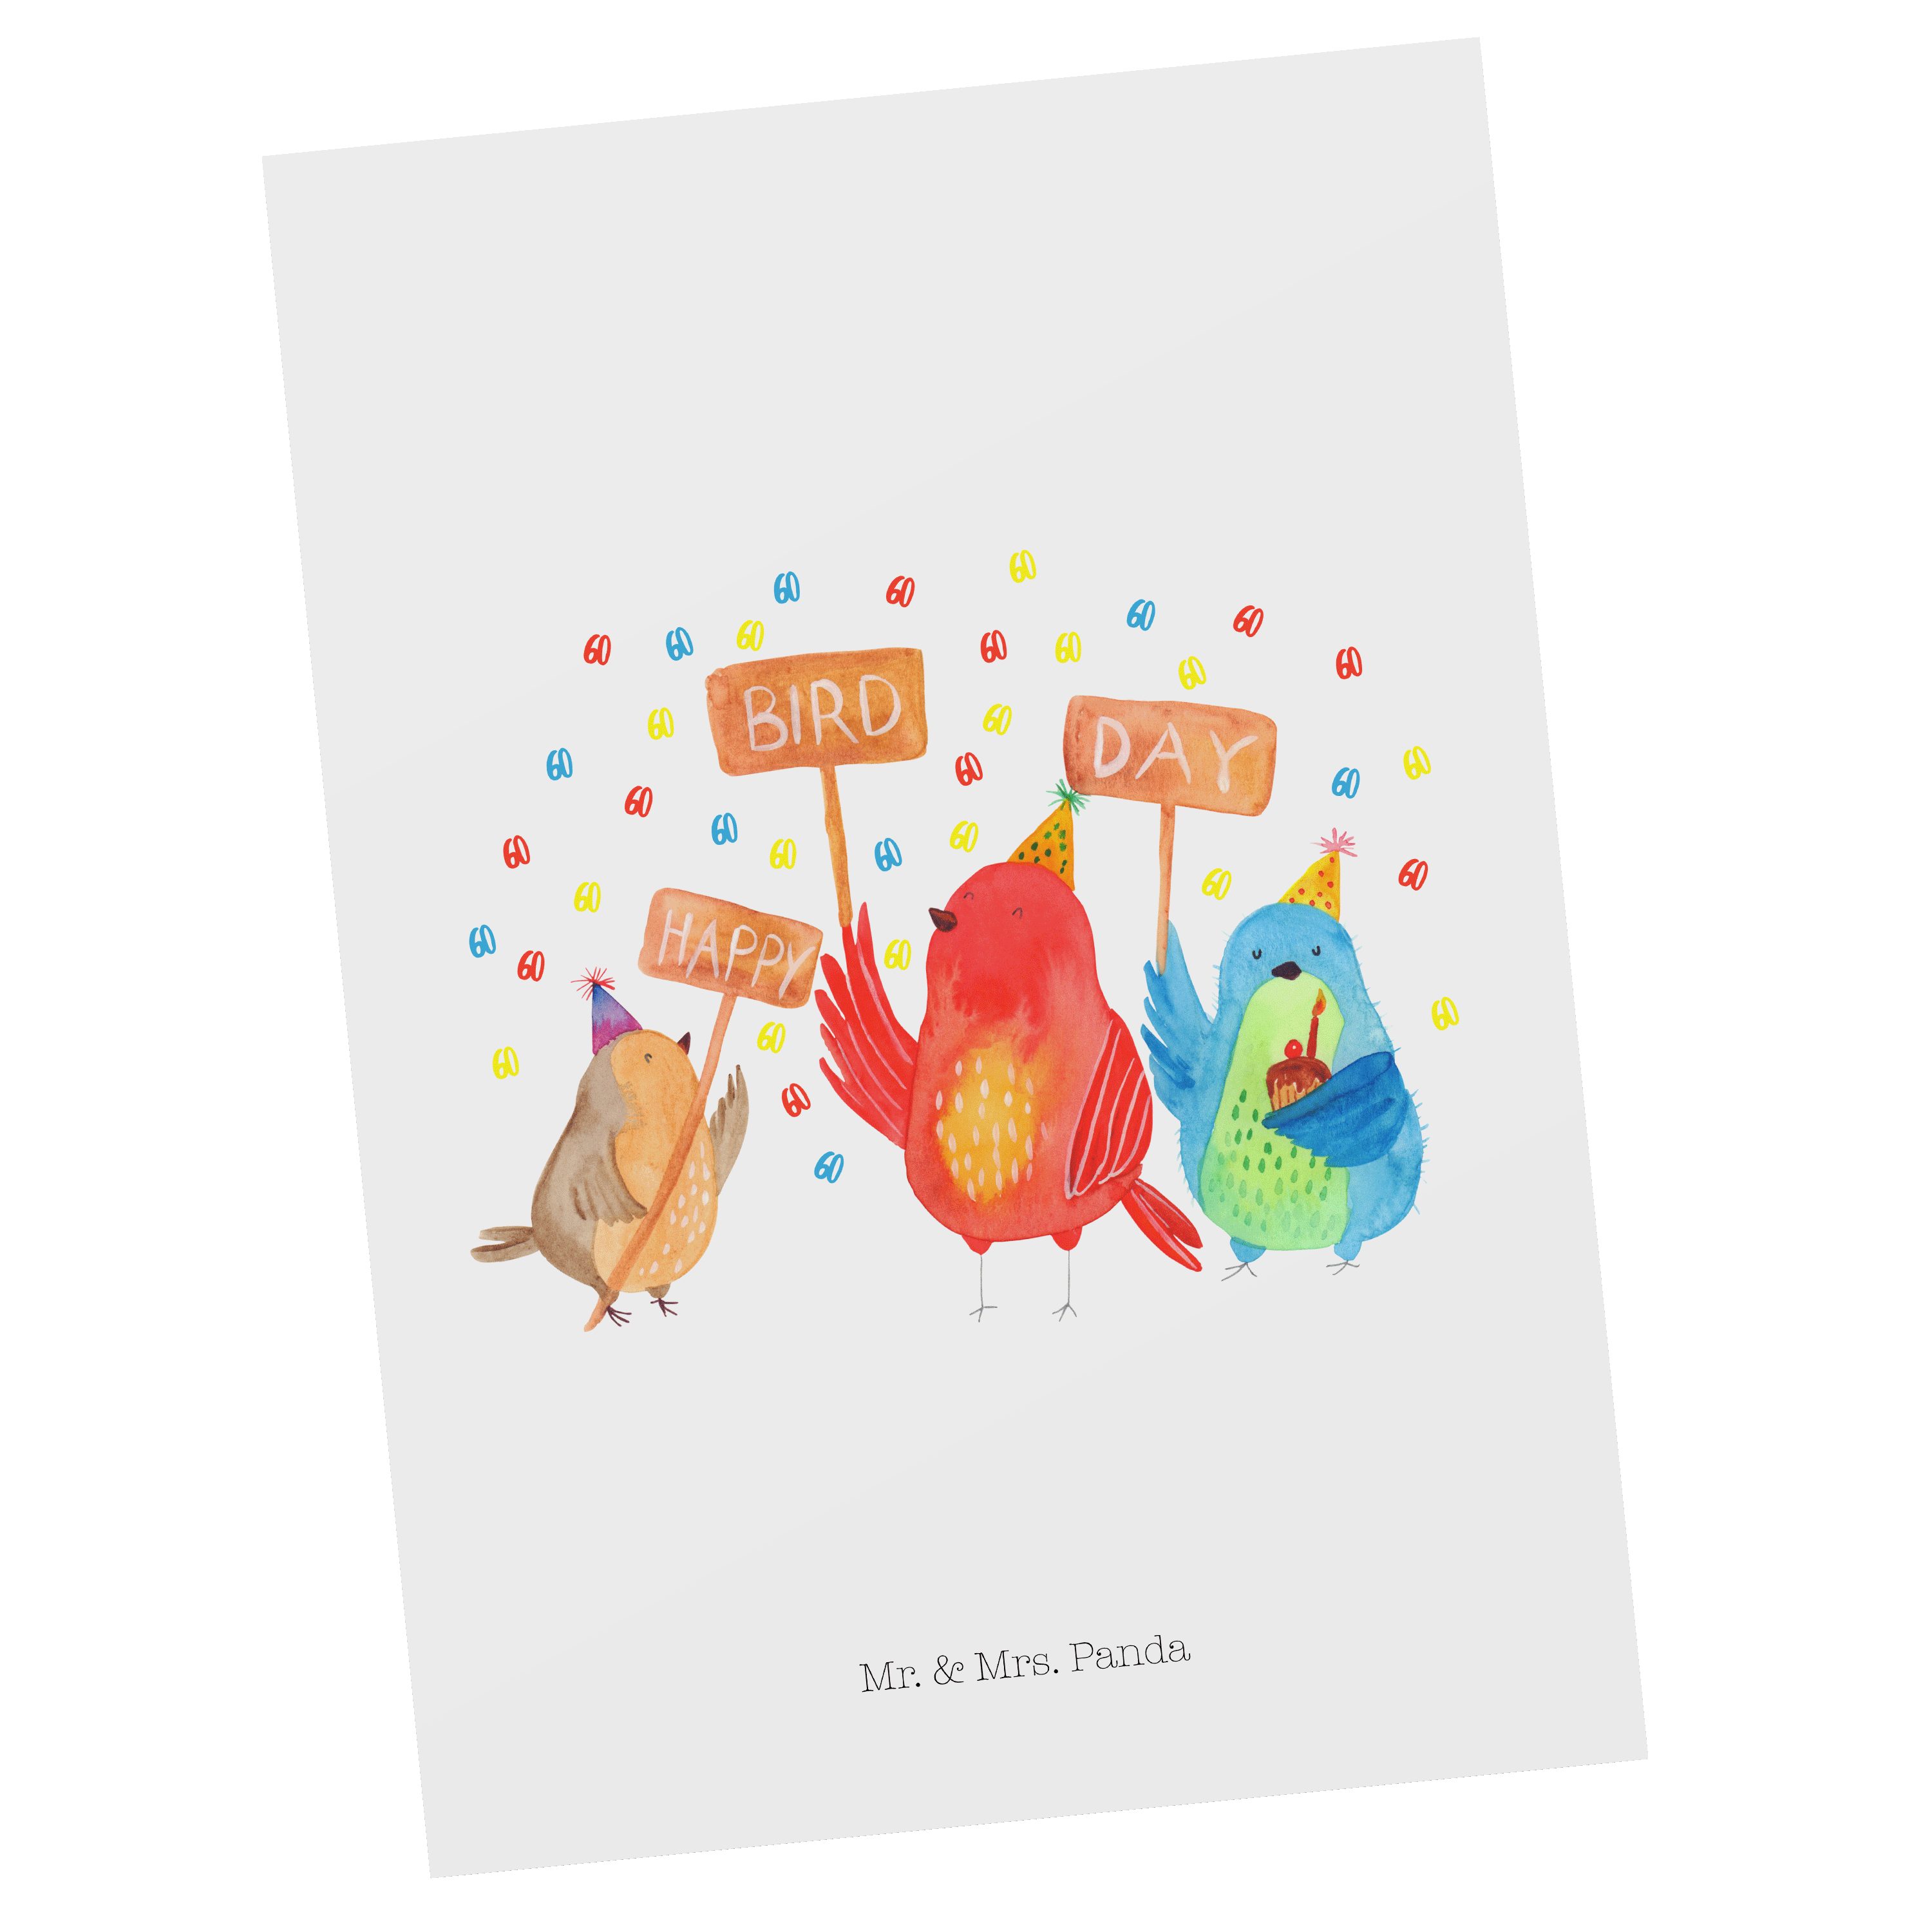 Mr. & Mrs. Panda Postkarte 60. Geburtstag Happy Bird Day - Weiß - Geschenk, Karte, Grußkarte, Ei | Grußkarten